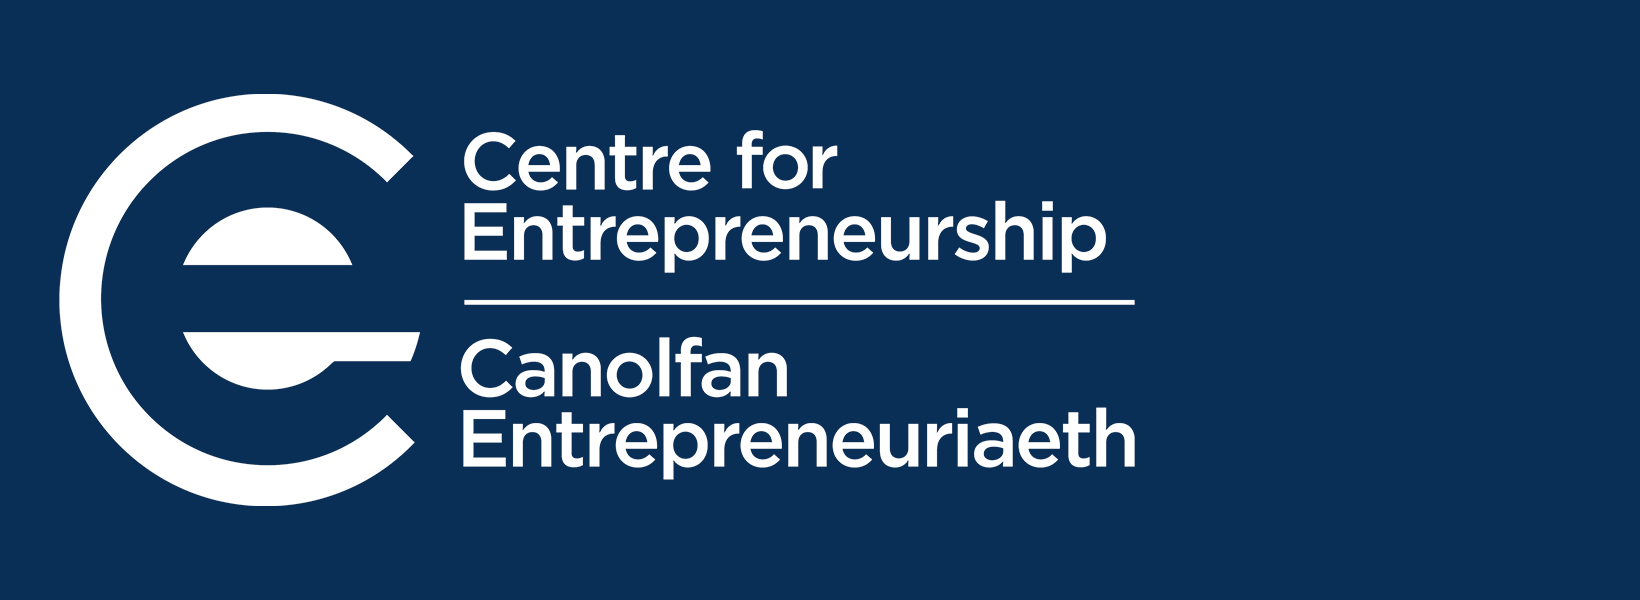 Logo y Ganolfan Entrepreneuriaeth